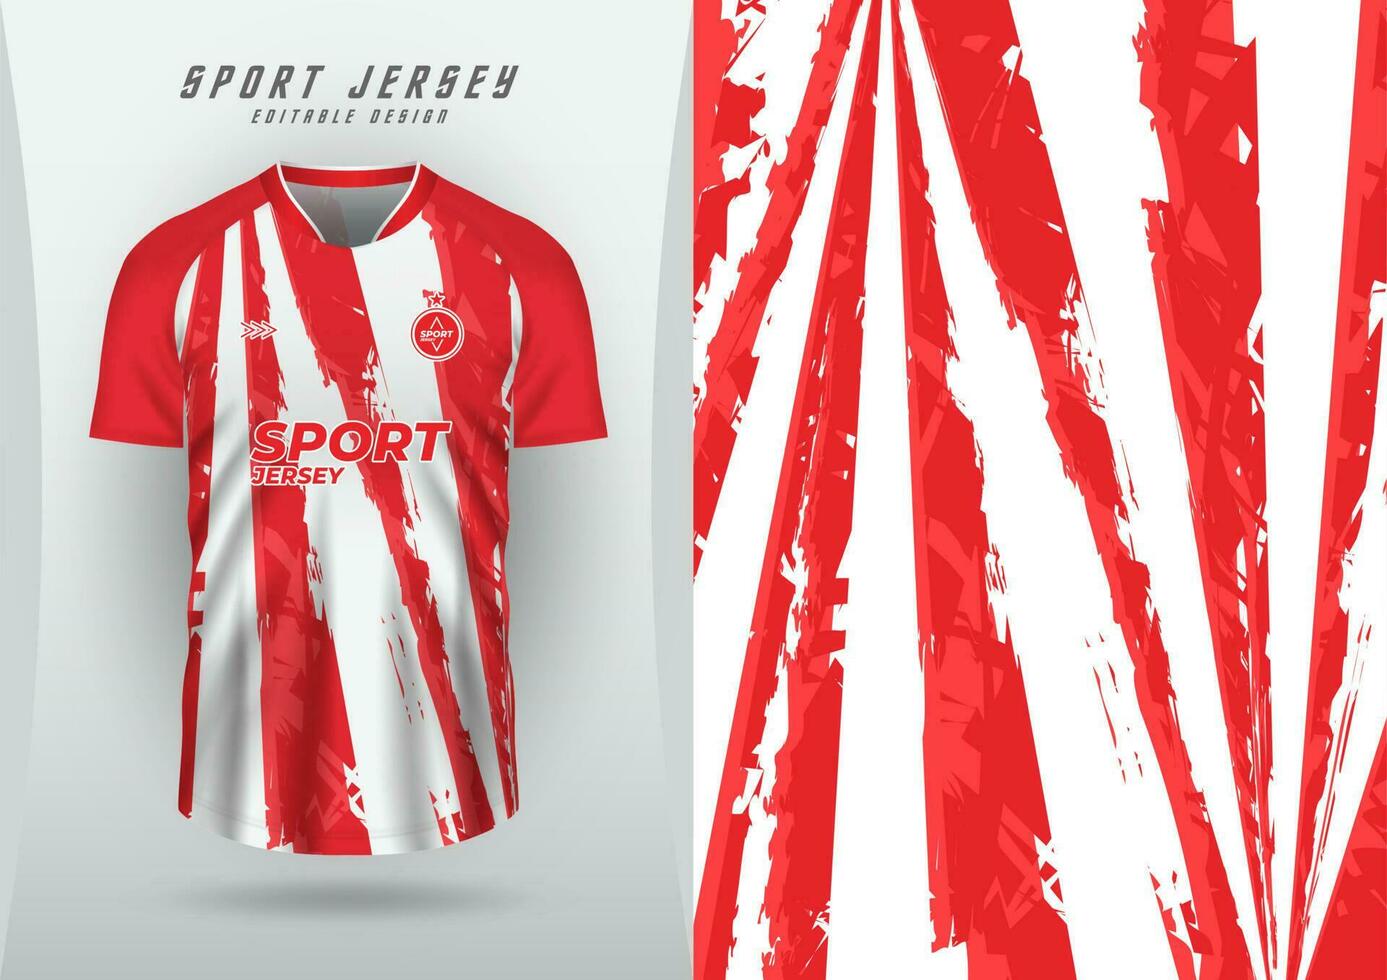 achtergrond voor sport- Jersey, voetbal Jersey, rennen Jersey, racing Jersey, rood en wit patroon. vector